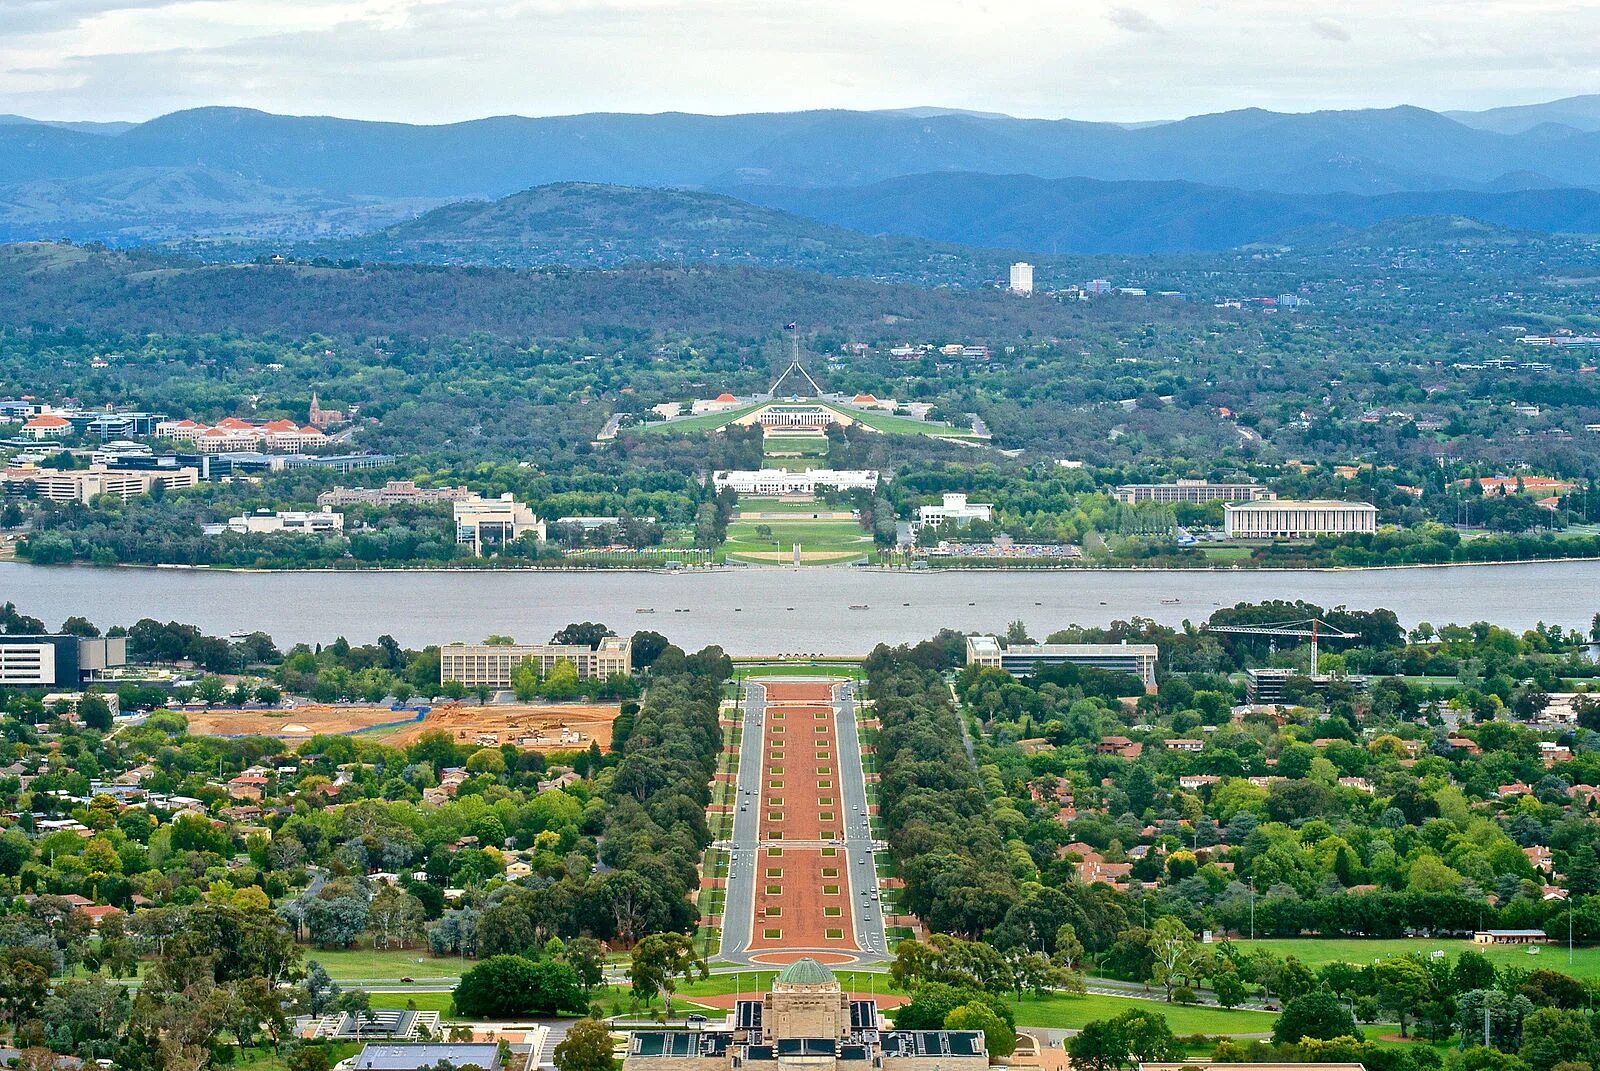 Столица города Canberra. Столица Австралии город Канберра. Столица Австралии Канберра достопримечательности. Канберра город сад.